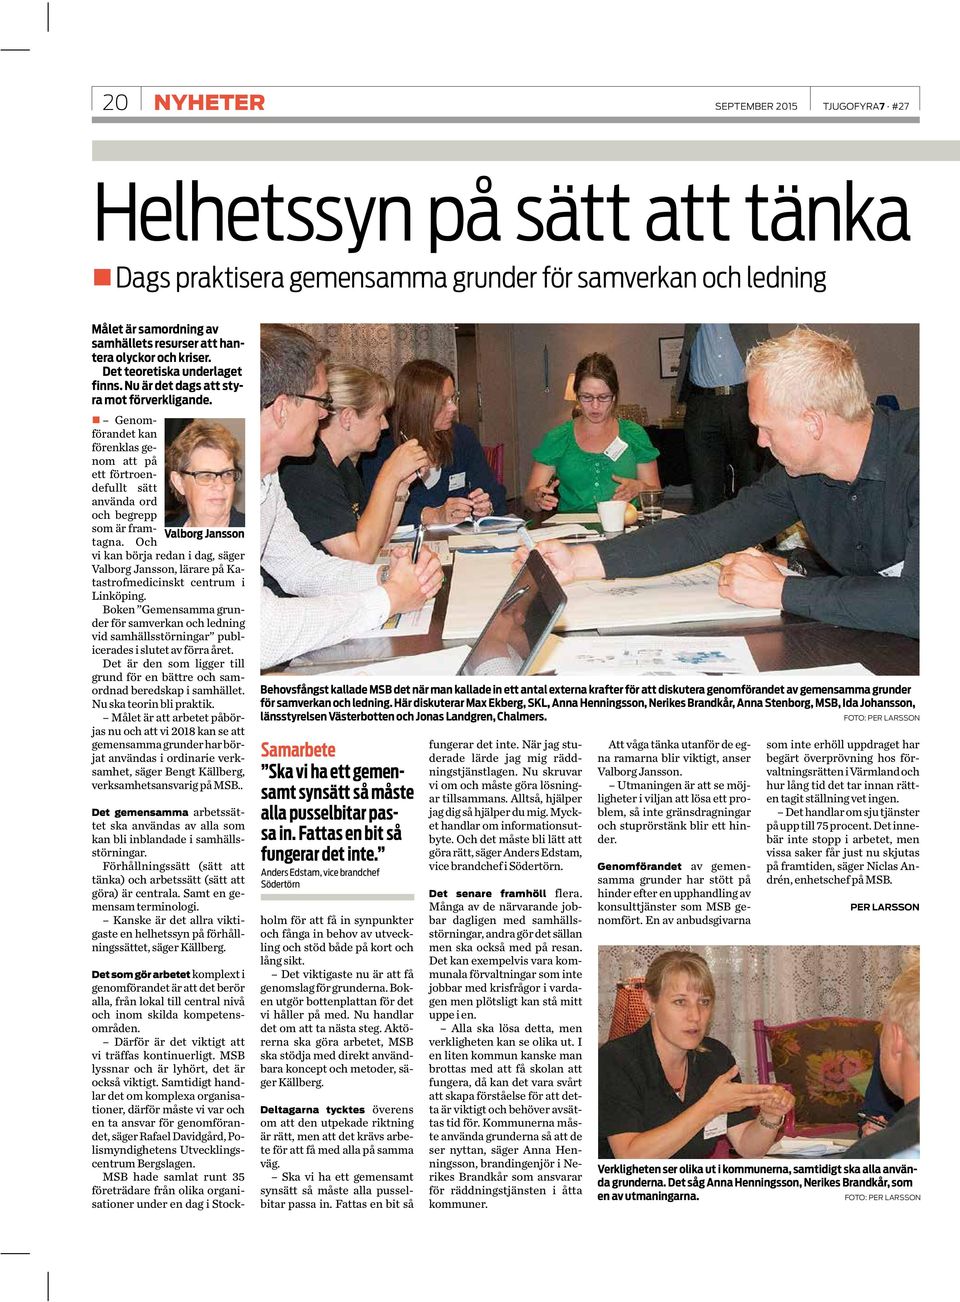 Och Valborg Jansson vi kan börja redan i dag, säger Valborg Jansson, lärare på Katastrofmedicinskt centrum i Linköping.